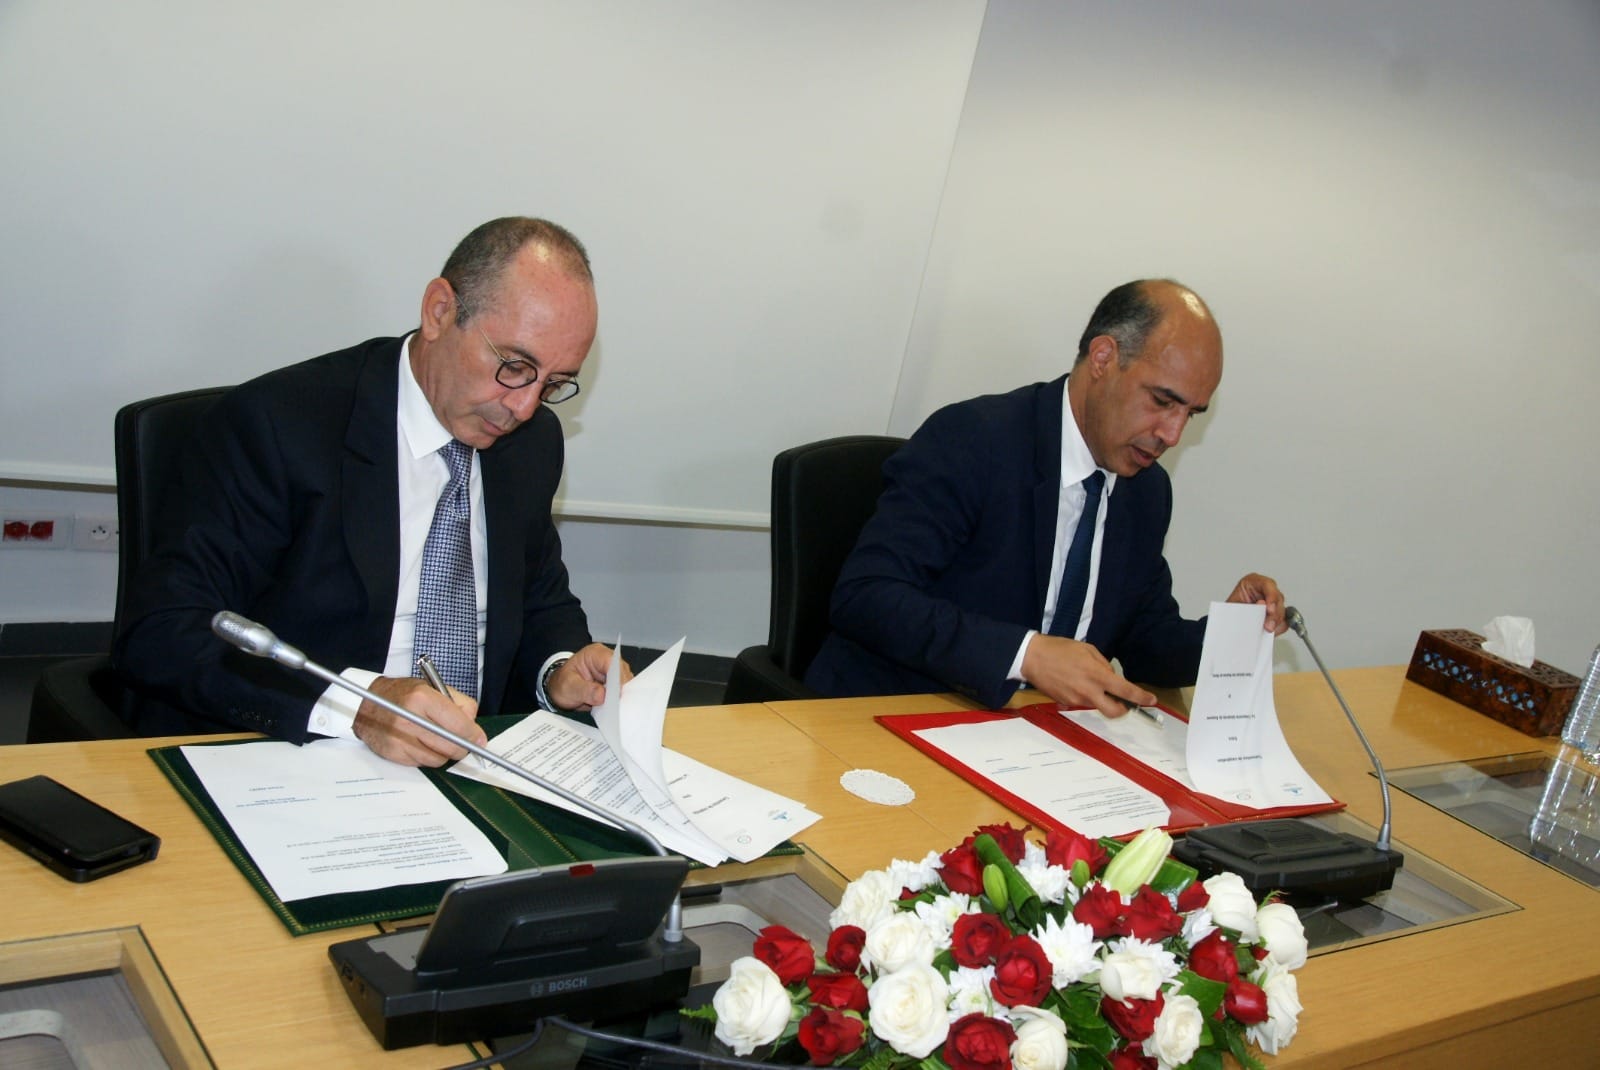 الهيئة الوطنية للموثقين بالمغرب توقع اتفاق تعاون مع الخزينة العامة للمملكة